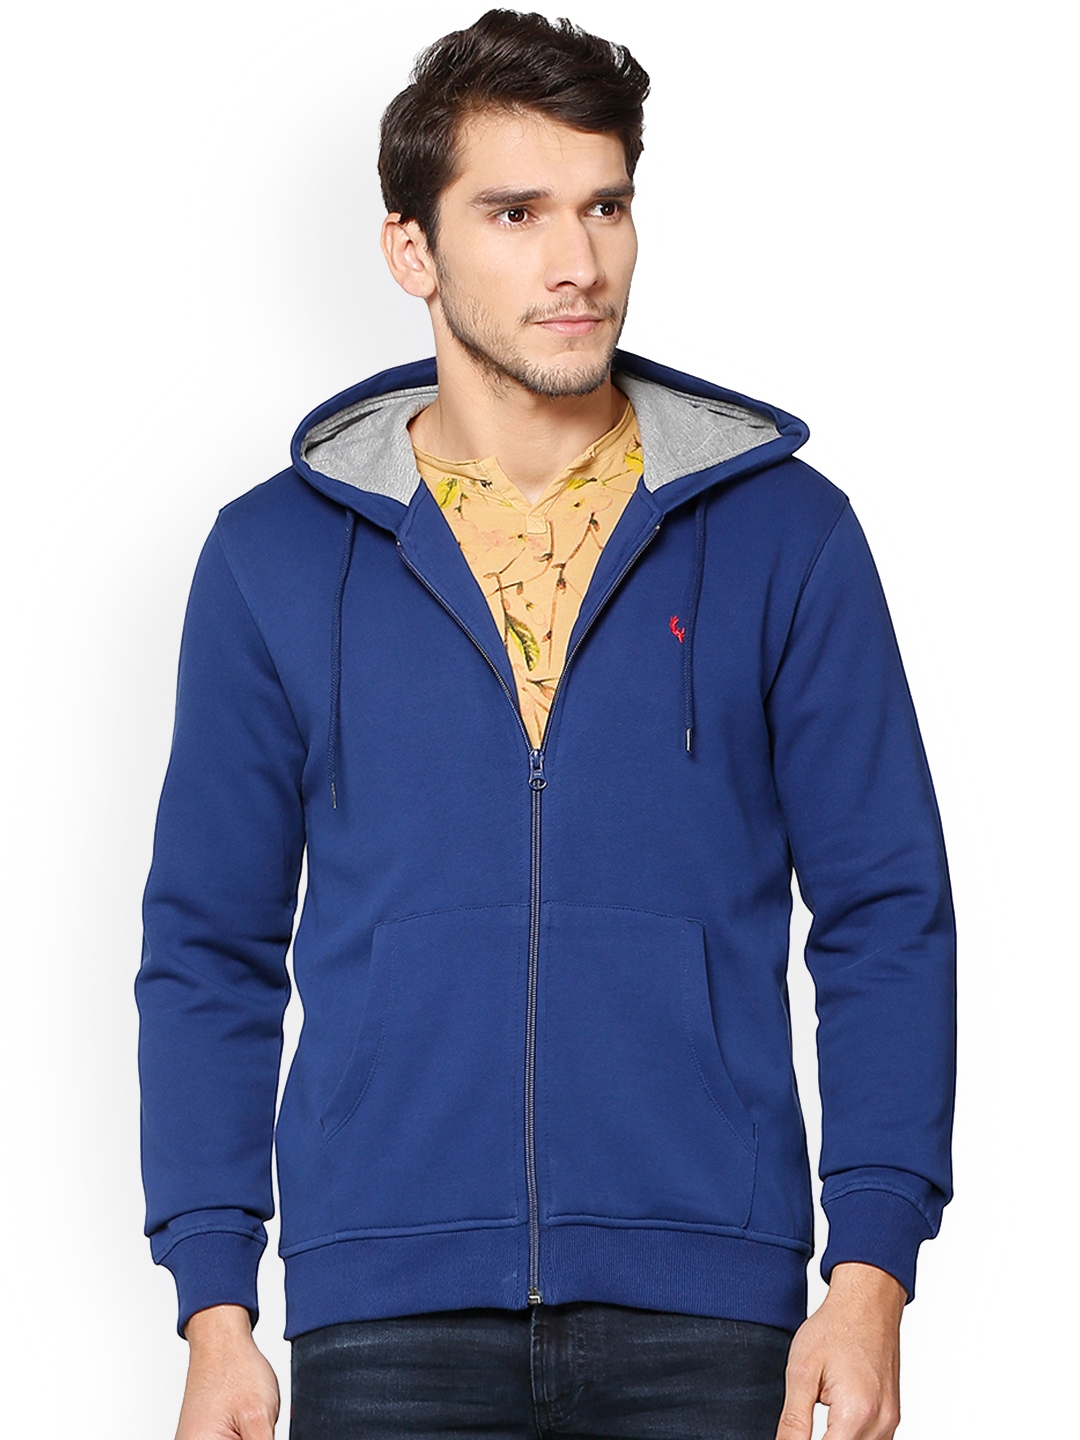 Buy Allen Solly Men Blue Solid Hooded Sweatshirt - Sweatshirts for Men ...